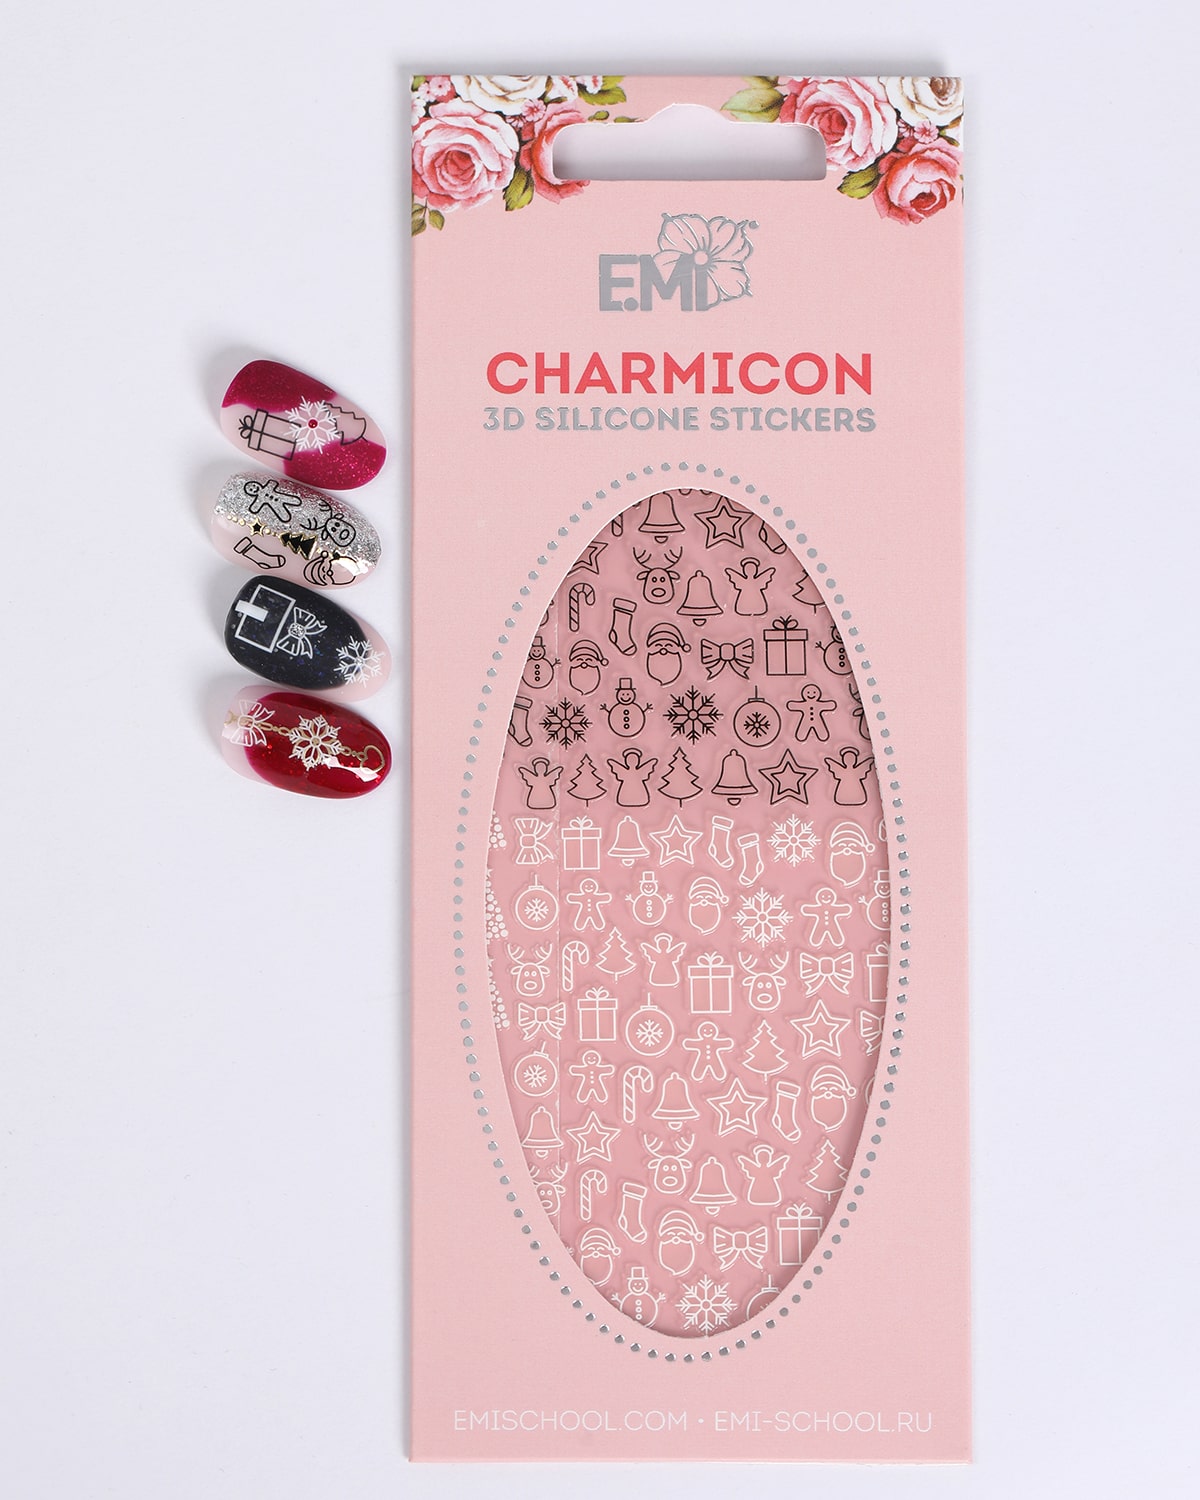 Купить Charmicon 3D Silicone Stickers №71 Merry Christmas в официальном магазине EMI с доставкой по России